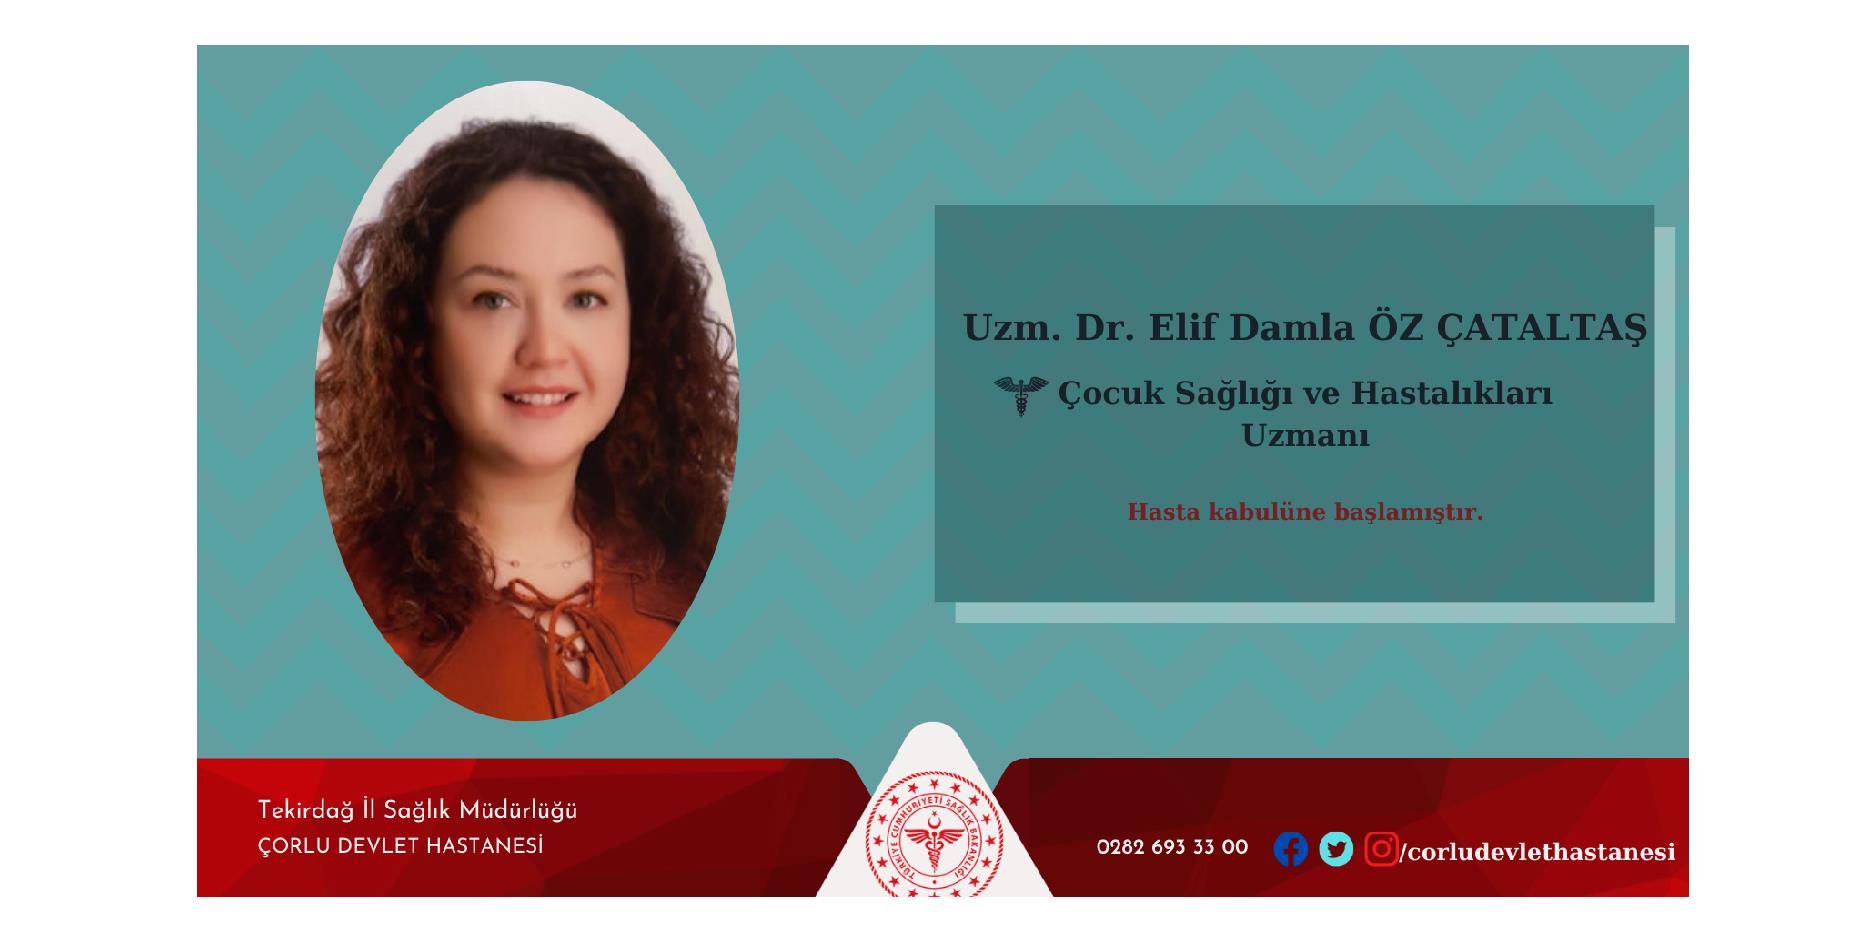 Çocuk Sağlığı ve Hastalıkları Uzmanı Dr. Elif Damla ÖZ ÇATALTAŞ hasta kabulüne başlamıştır.